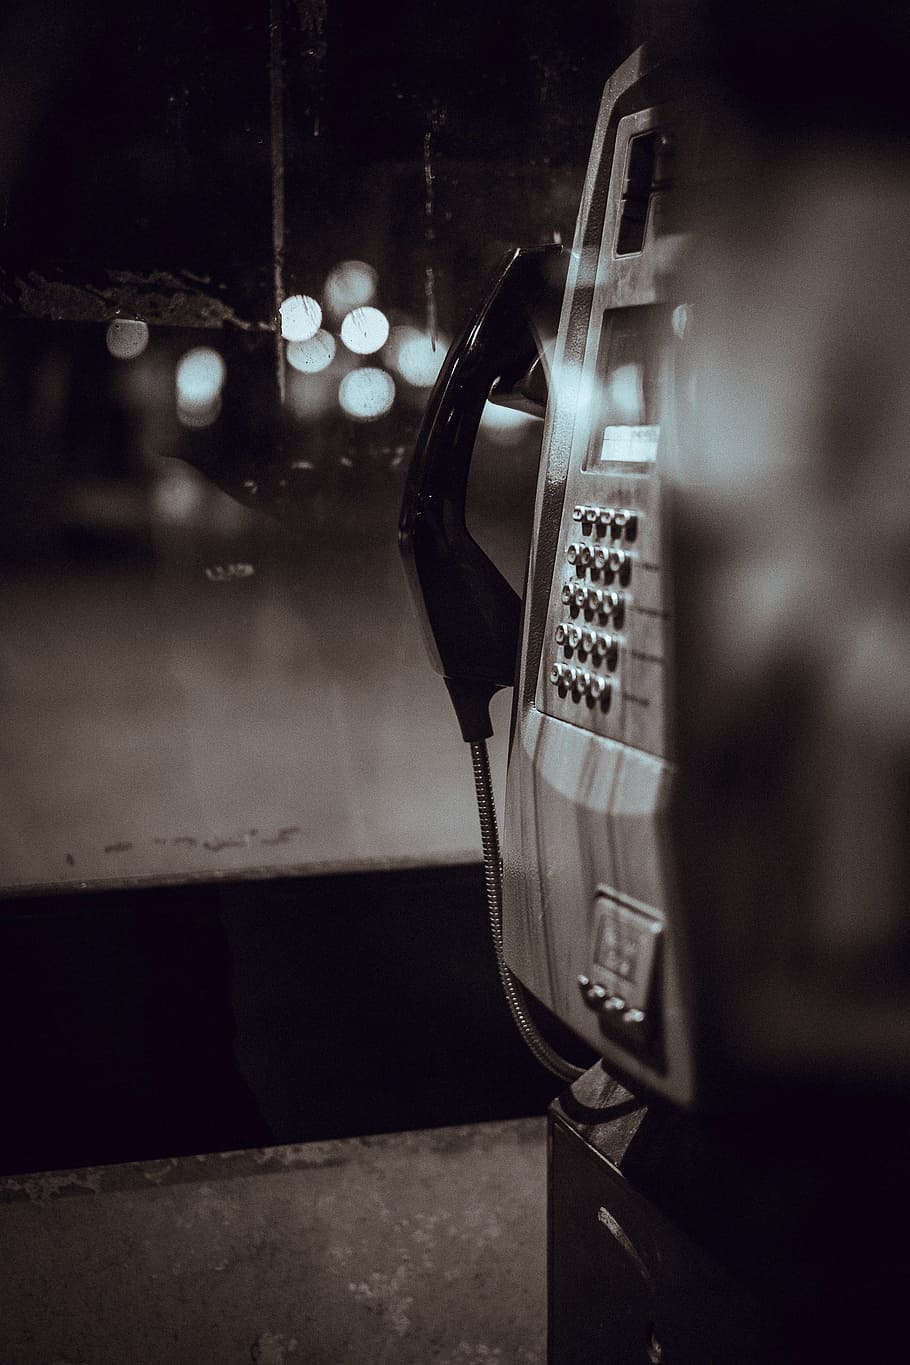 telepon umum, komunikasi, panggilan, telepon, hitam dan putih, close-up, teknologi, tidak ada orang, malam, gaya retro